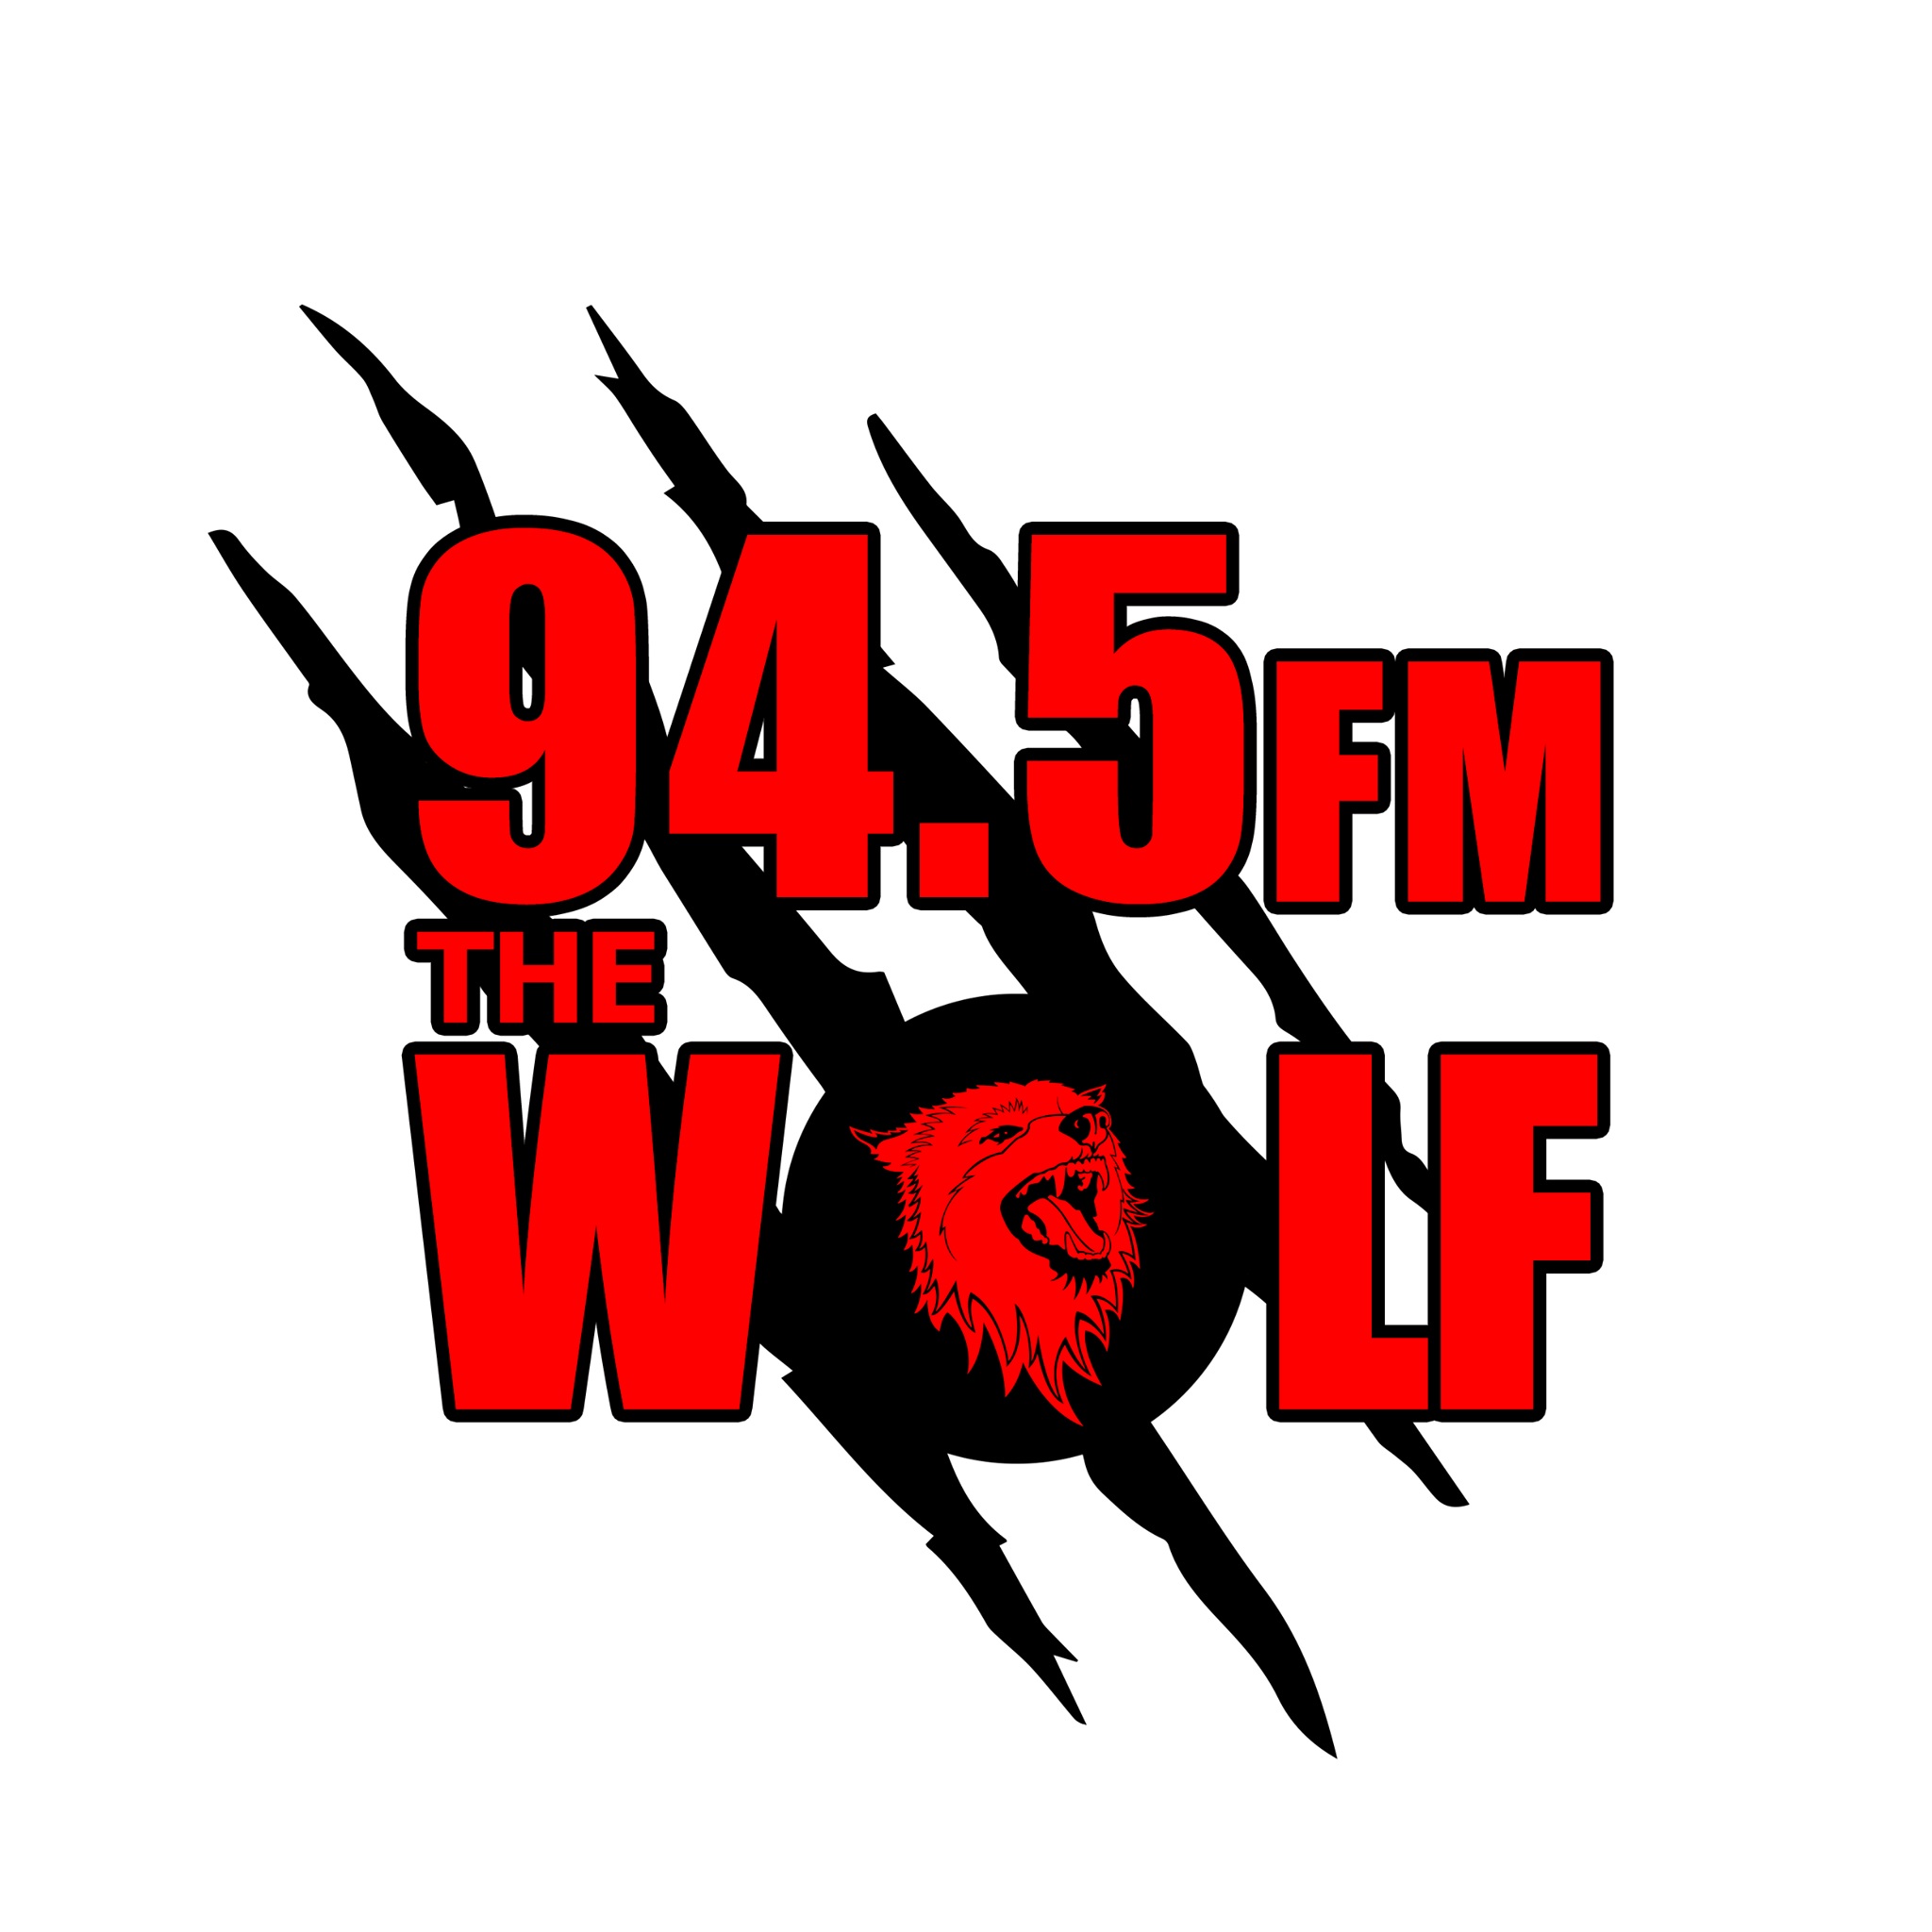 KEMX Wolf 94.5FM Pryor Oklahoma